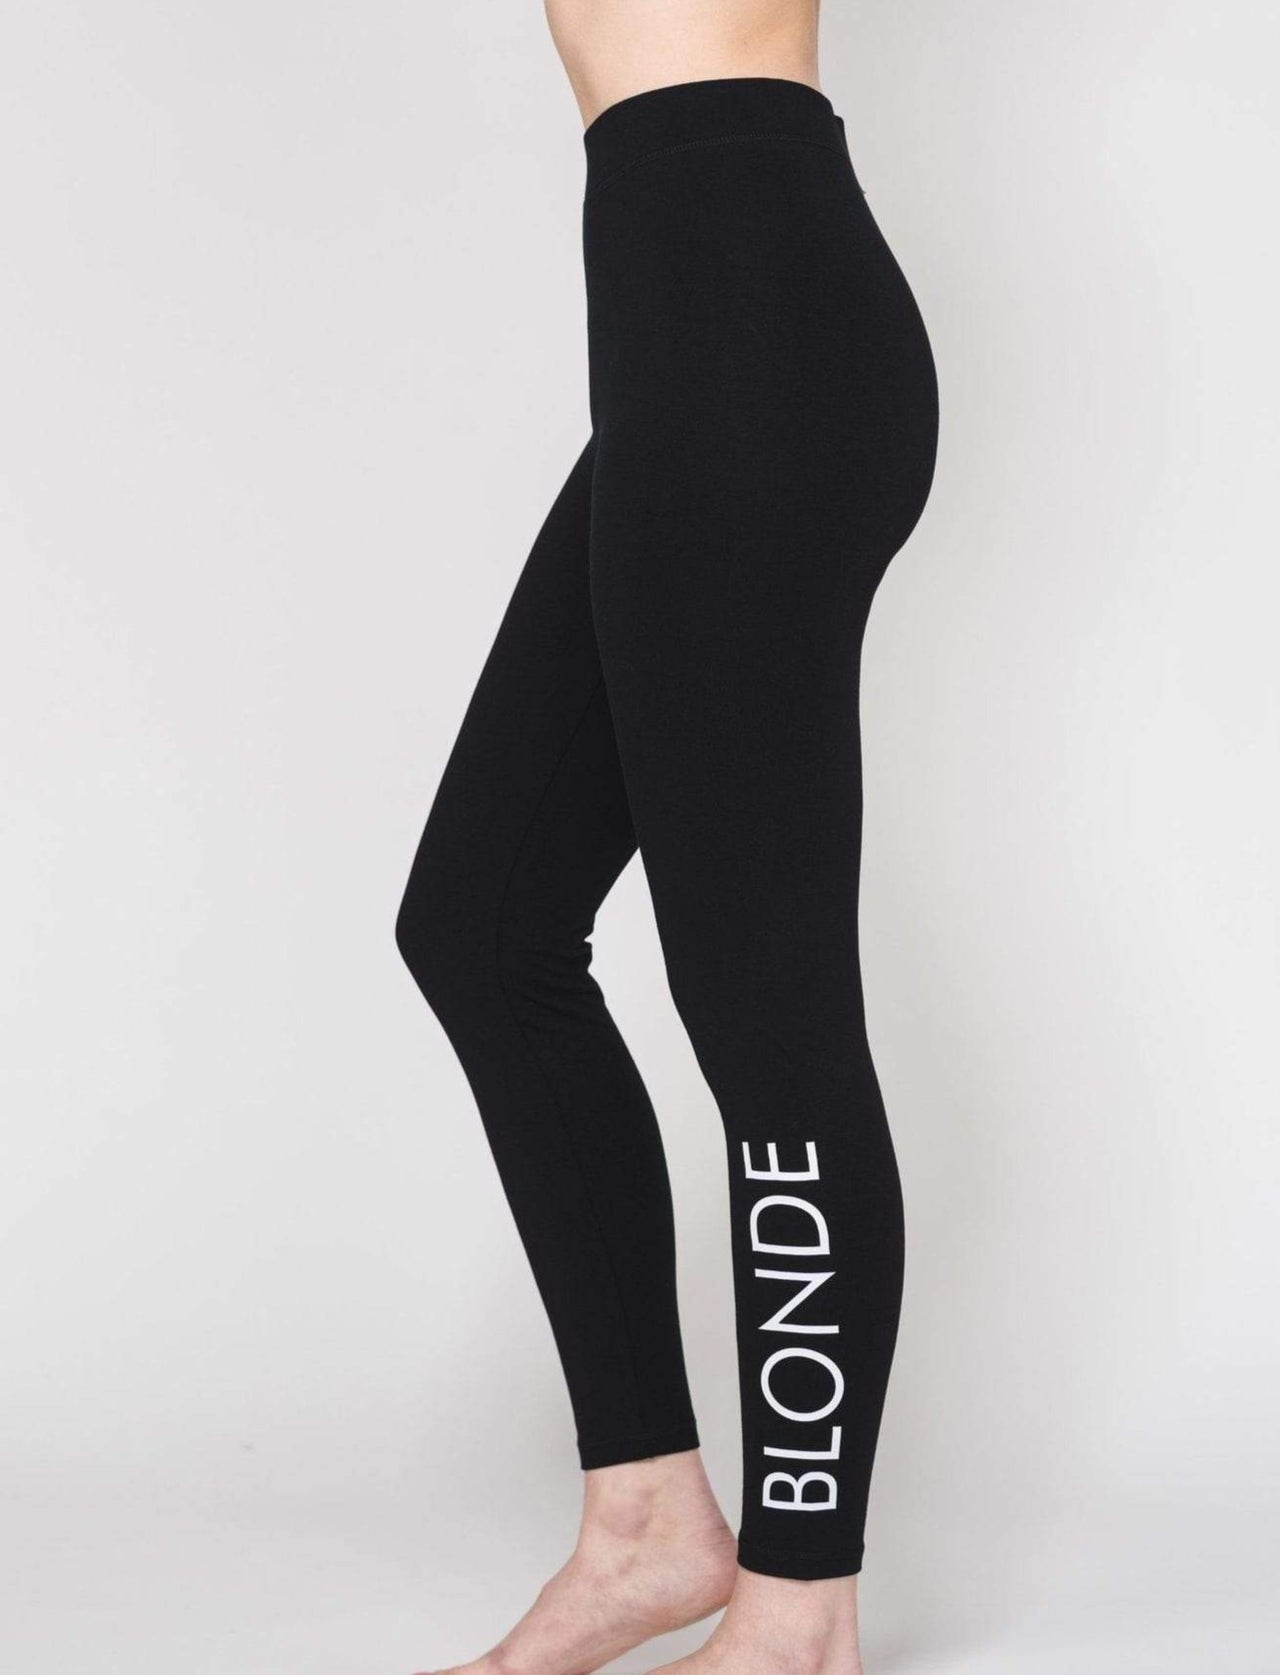 Blonde Legging, Legging/ Tights Bottom by Brunette the Label | LIT Boutique